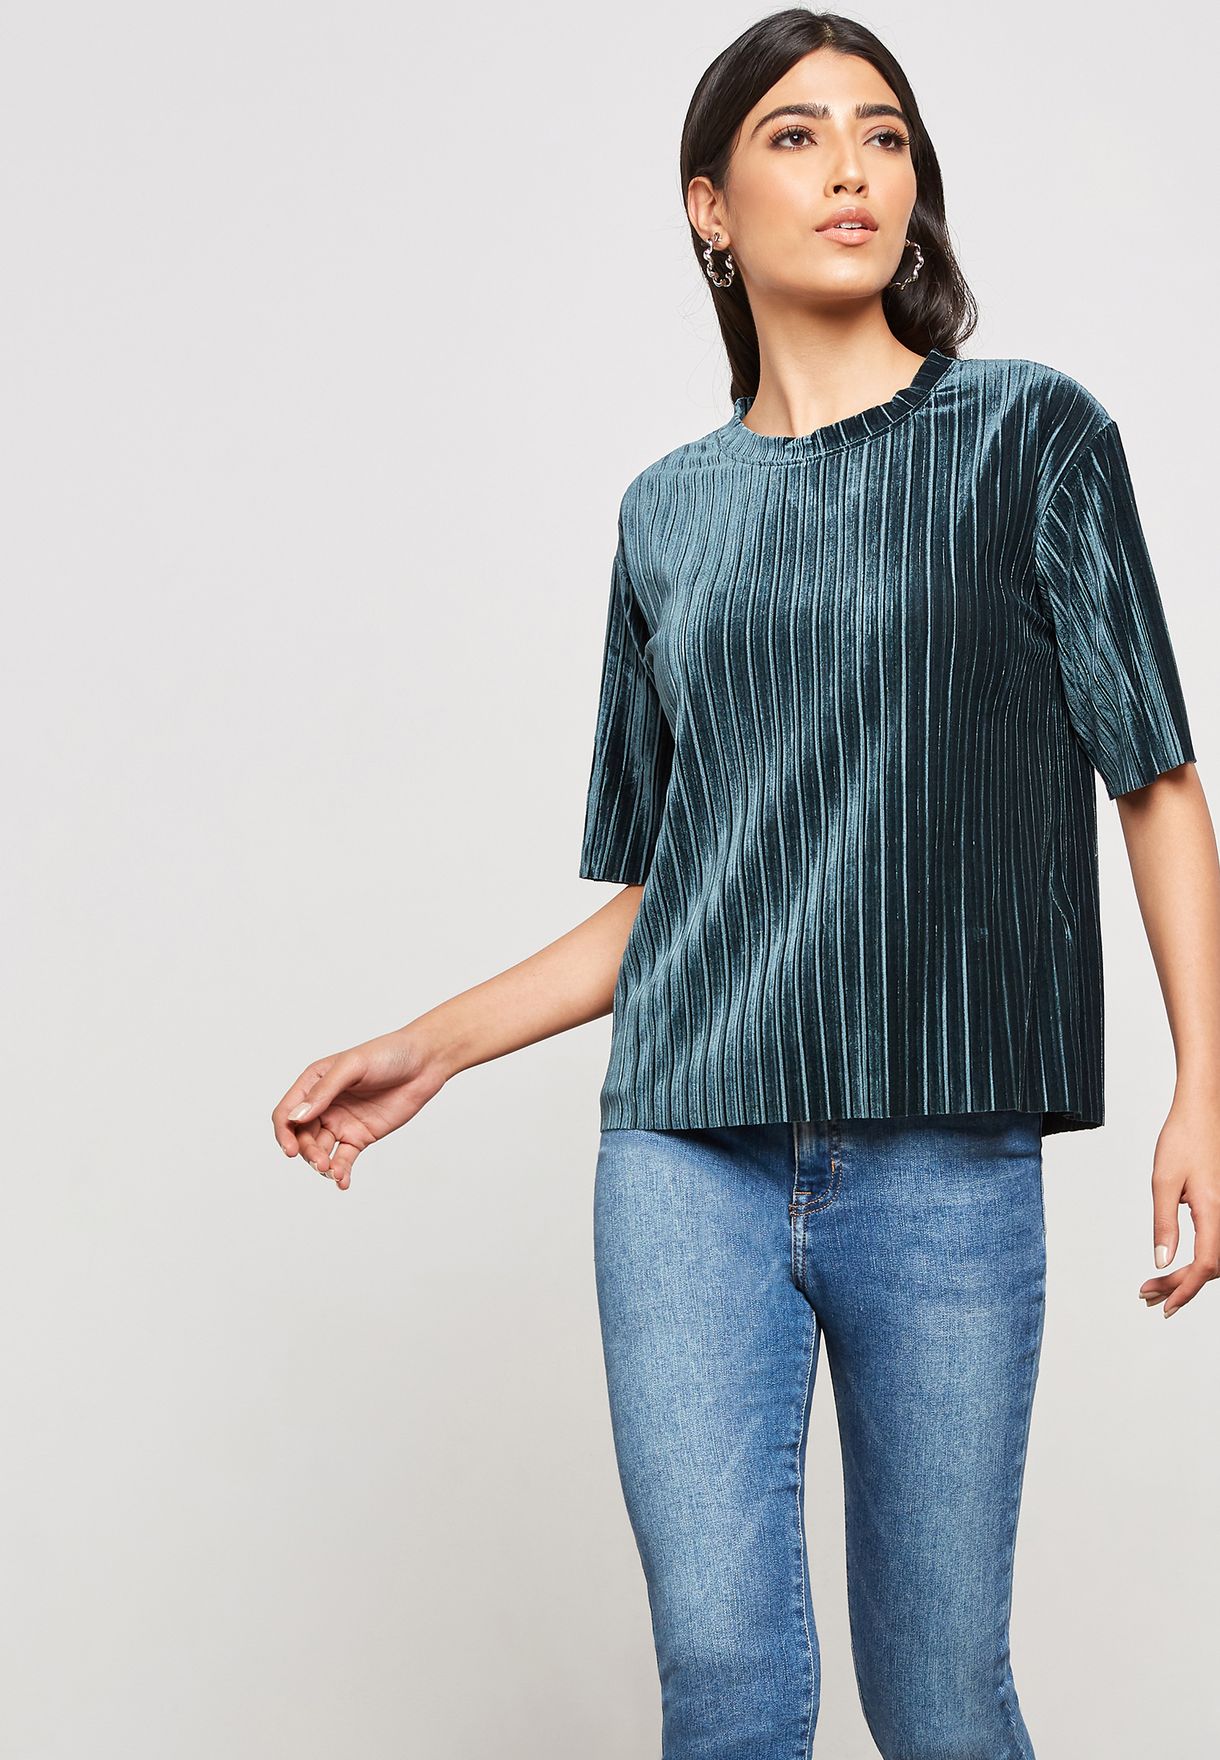 discount 56% Black XL Jacqueline de Yong T-shirt WOMEN FASHION Shirts & T-shirts Ribbed 